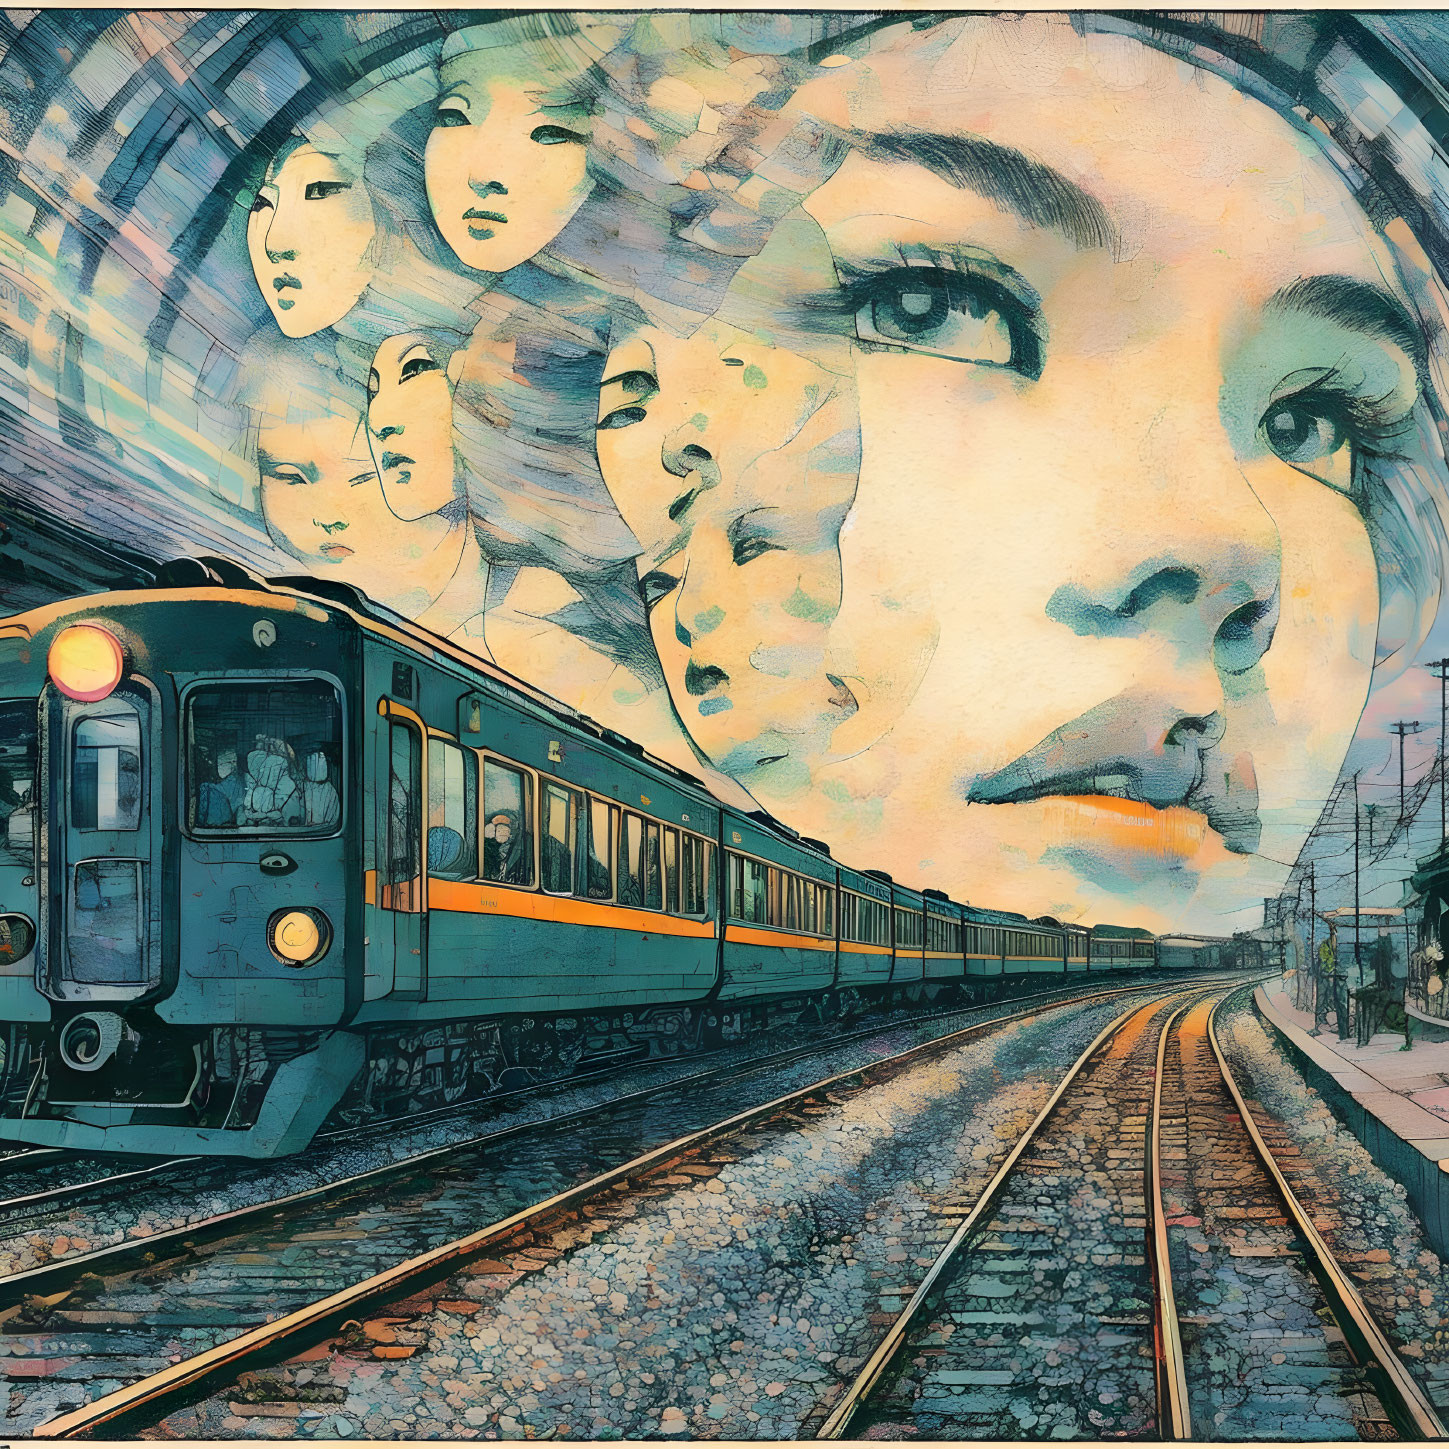 the 'stranger on a train' phenomenon